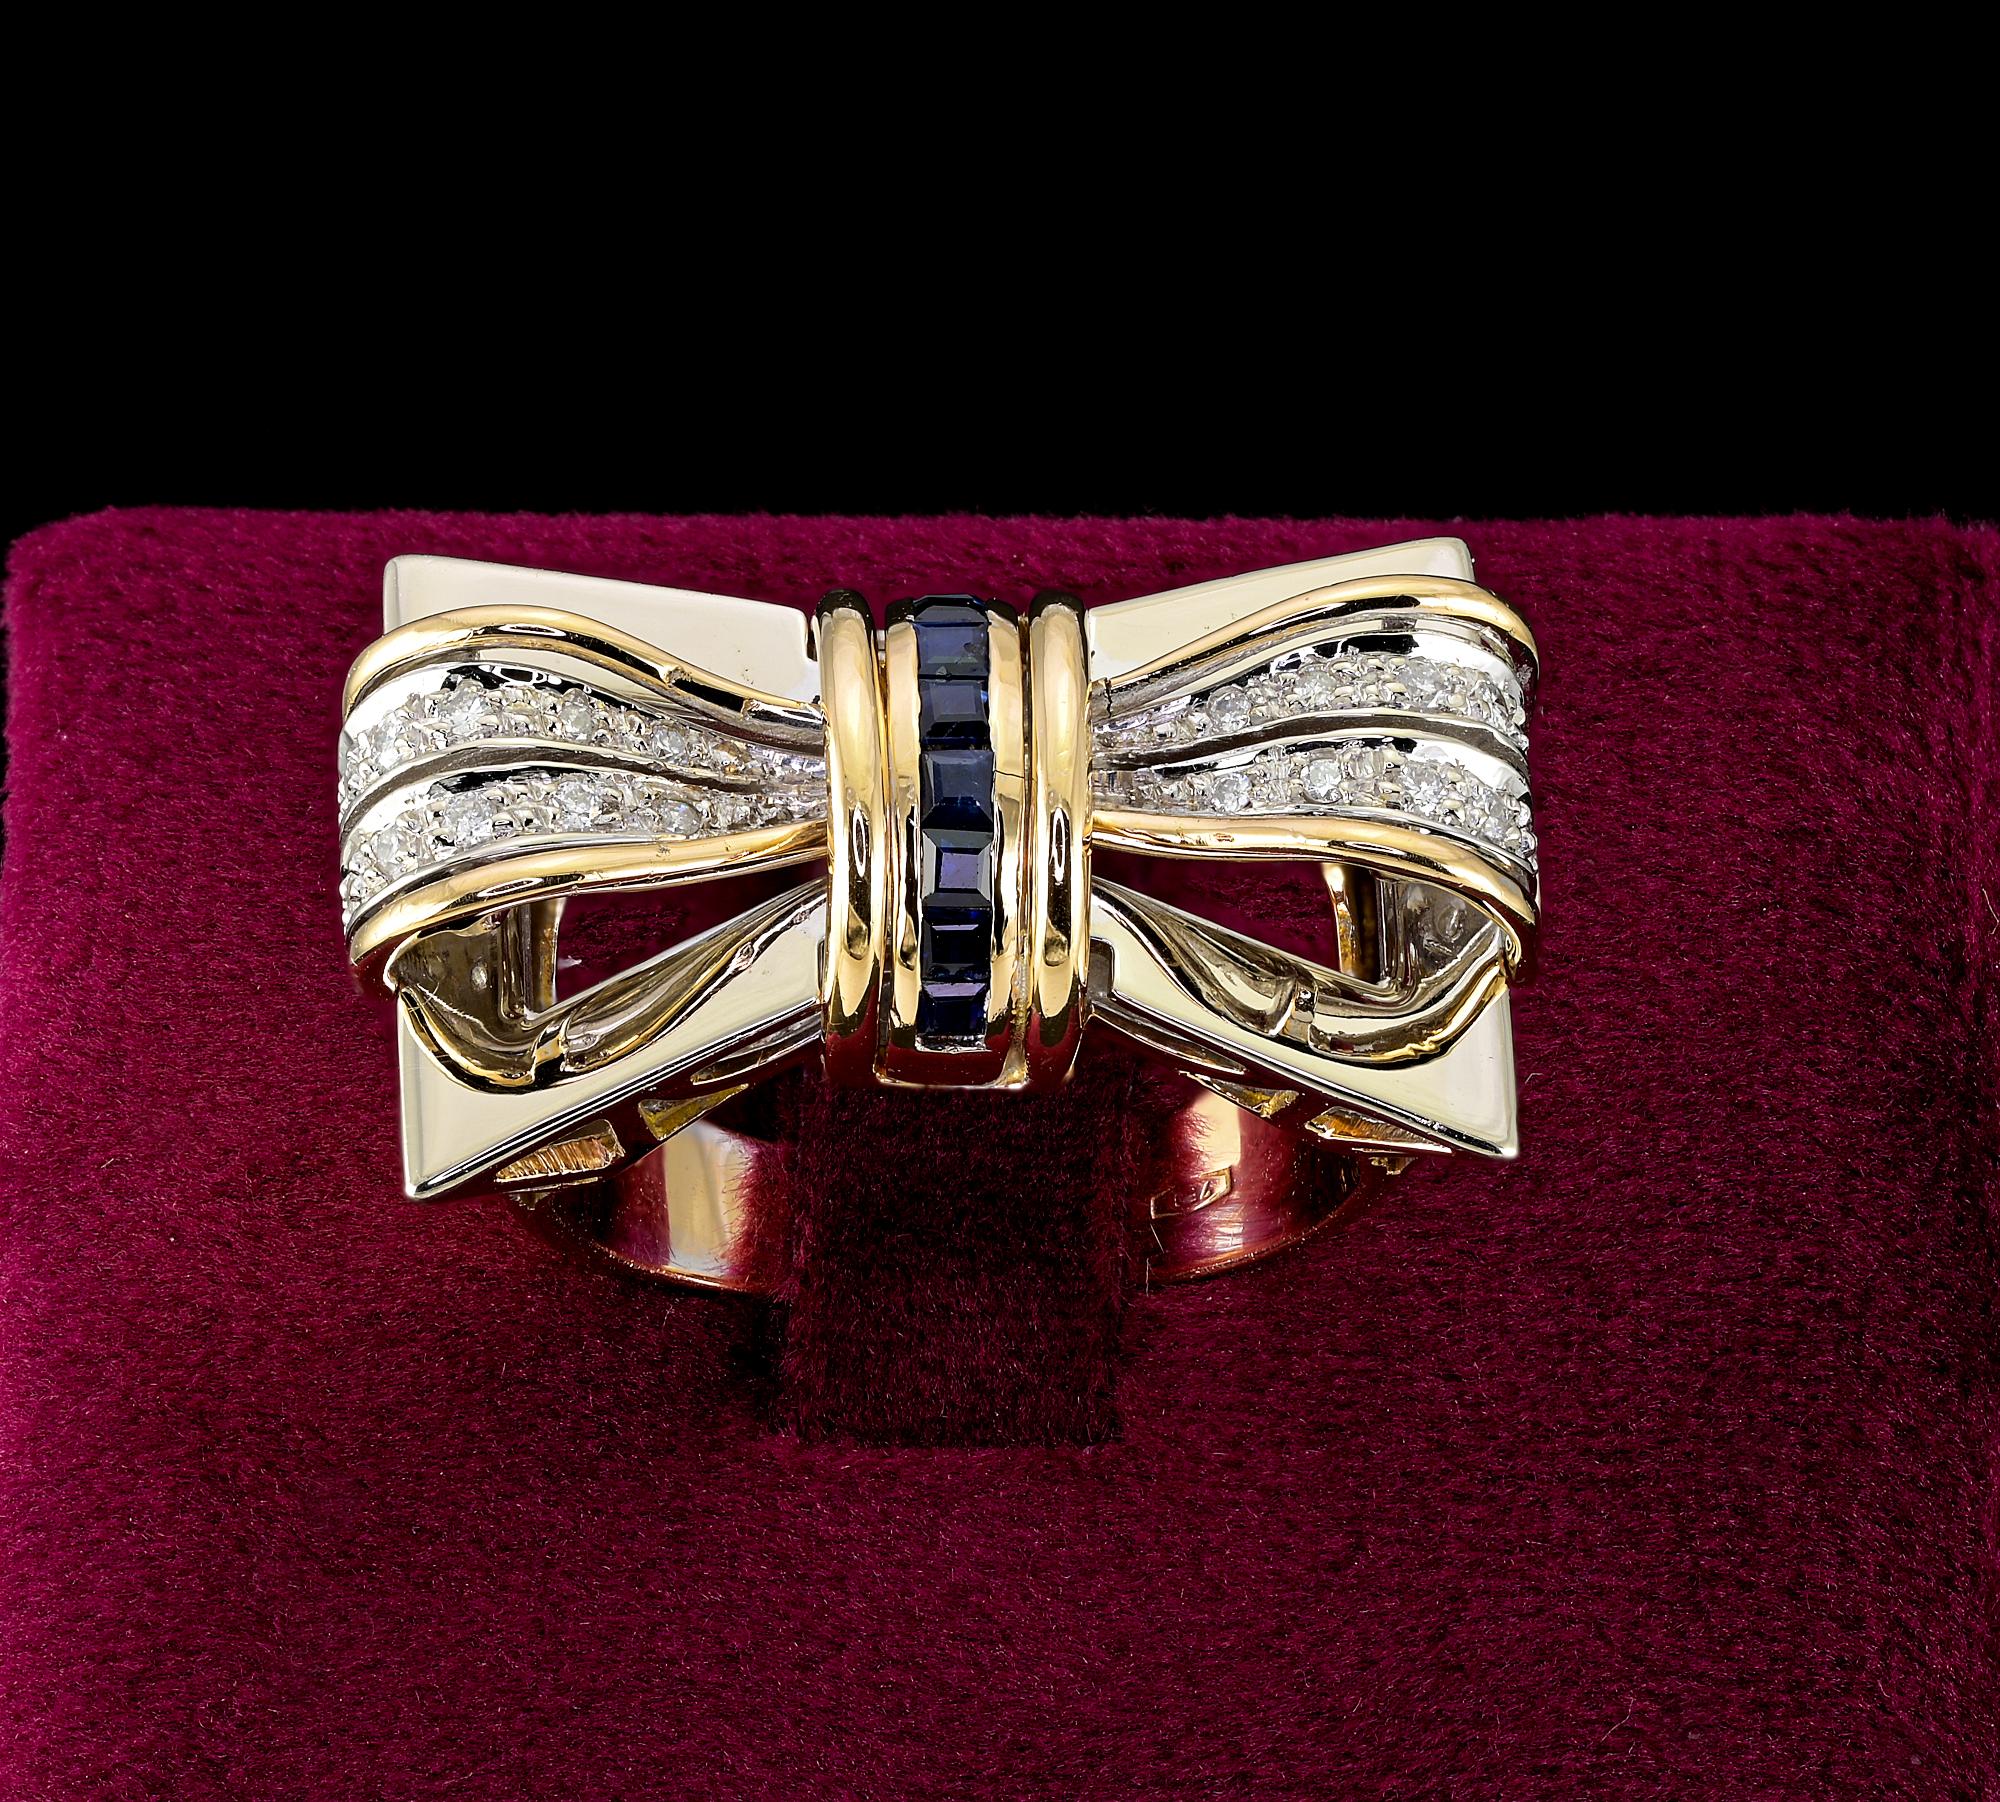 Dieser einzigartige Retro-Ring ist 1940 ca
Gekonnt handgefertigt aus massivem 18 KT Bicolor Weiß und Gelb für mehr Wirkung
Hervorragende große Schleife Design in einer schönen offenen Arbeit in ganz mit Diamanten und Saphiren besetzt
Ca. .70 ct